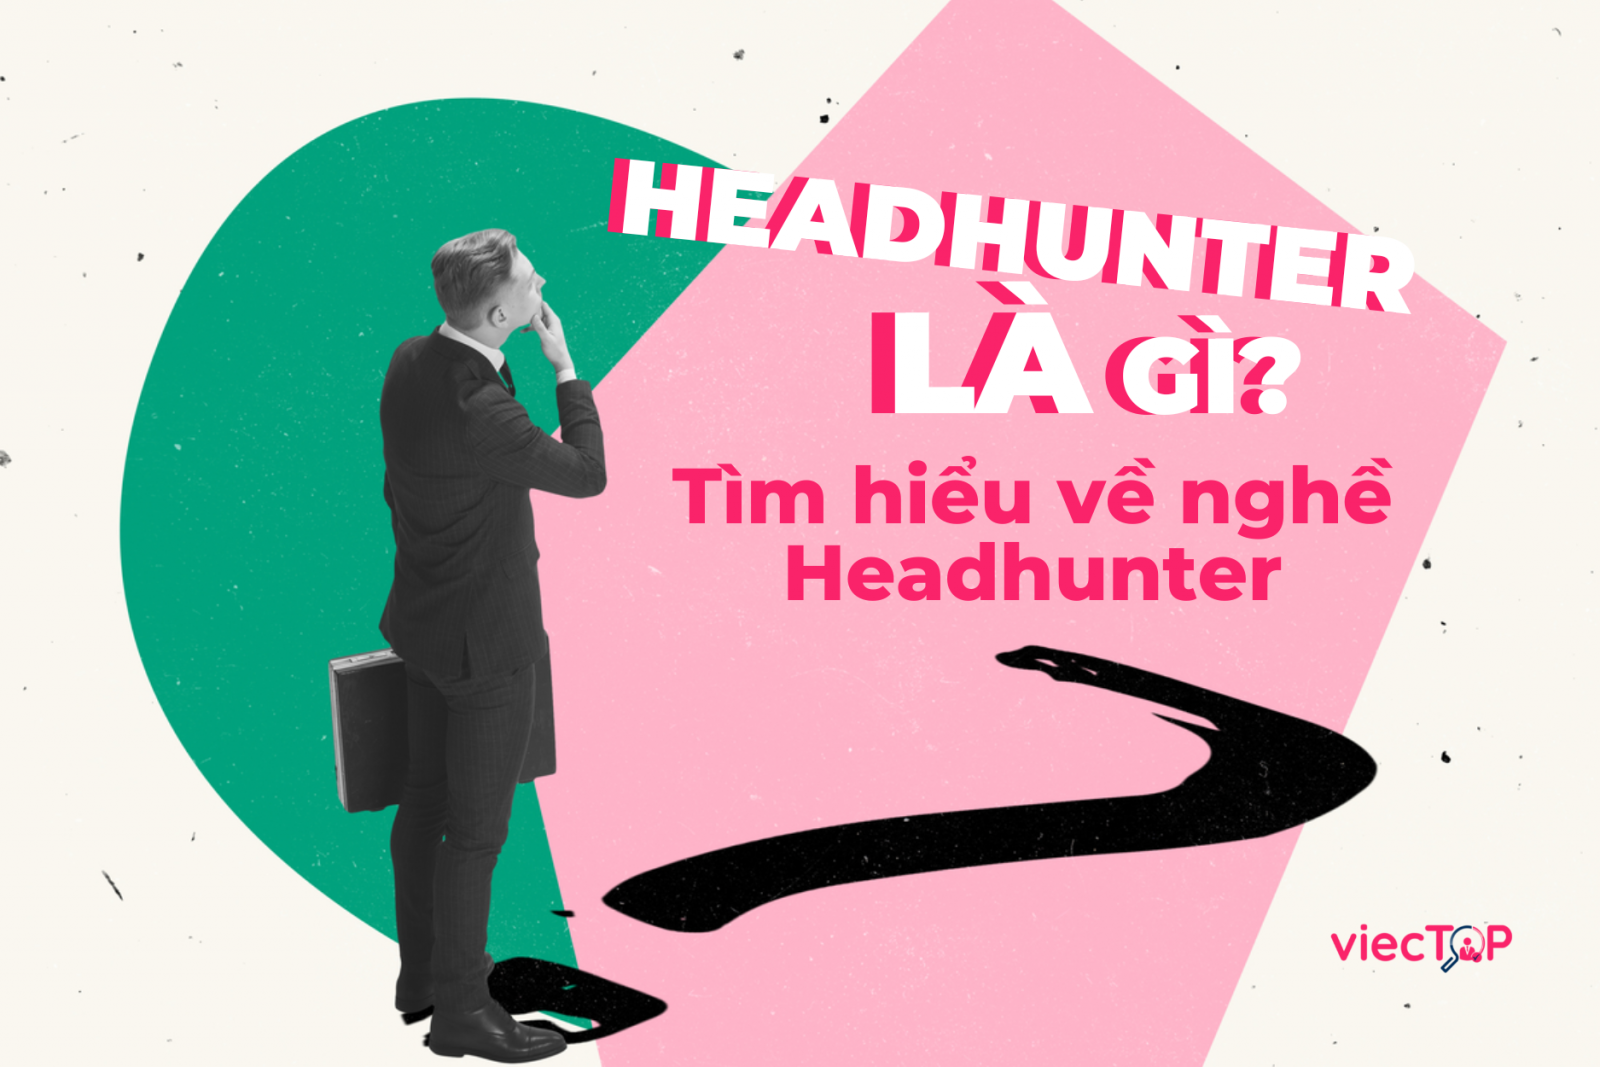 Headhunter là gì? Tìm hiểu về nghề Headhunter